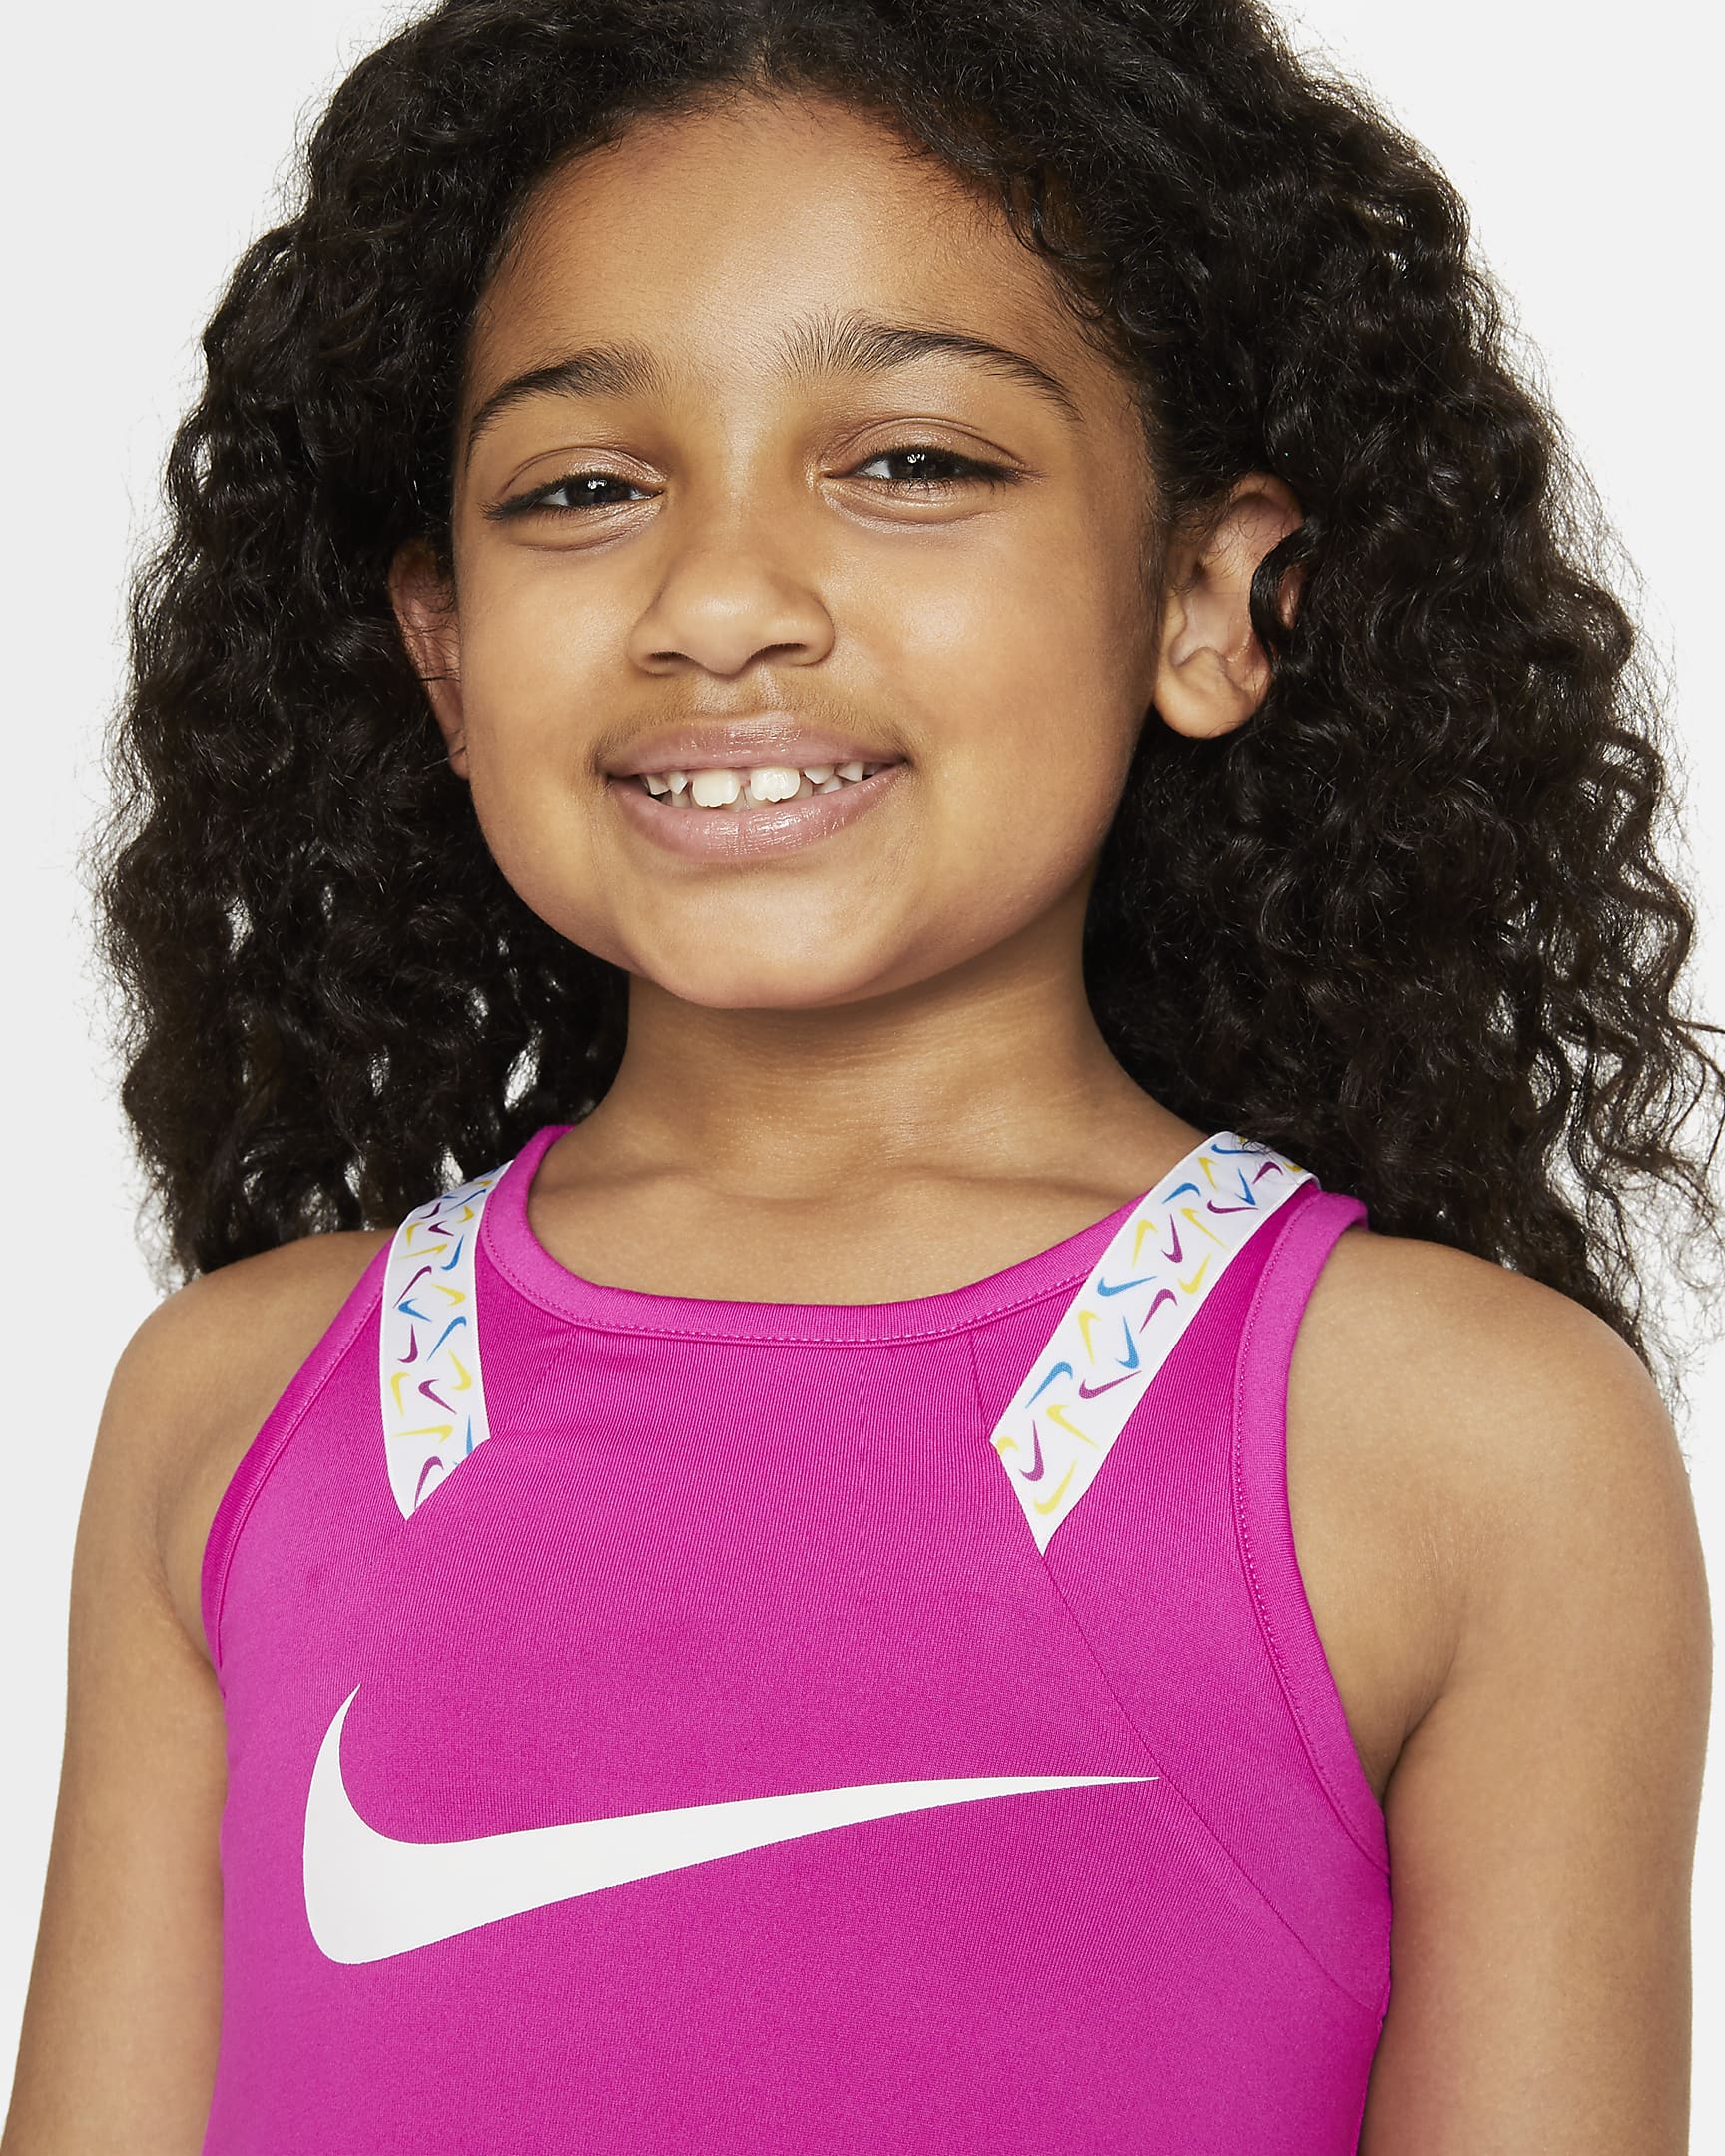 Nike Dri-FIT Little Kids' Dress. Nike.com